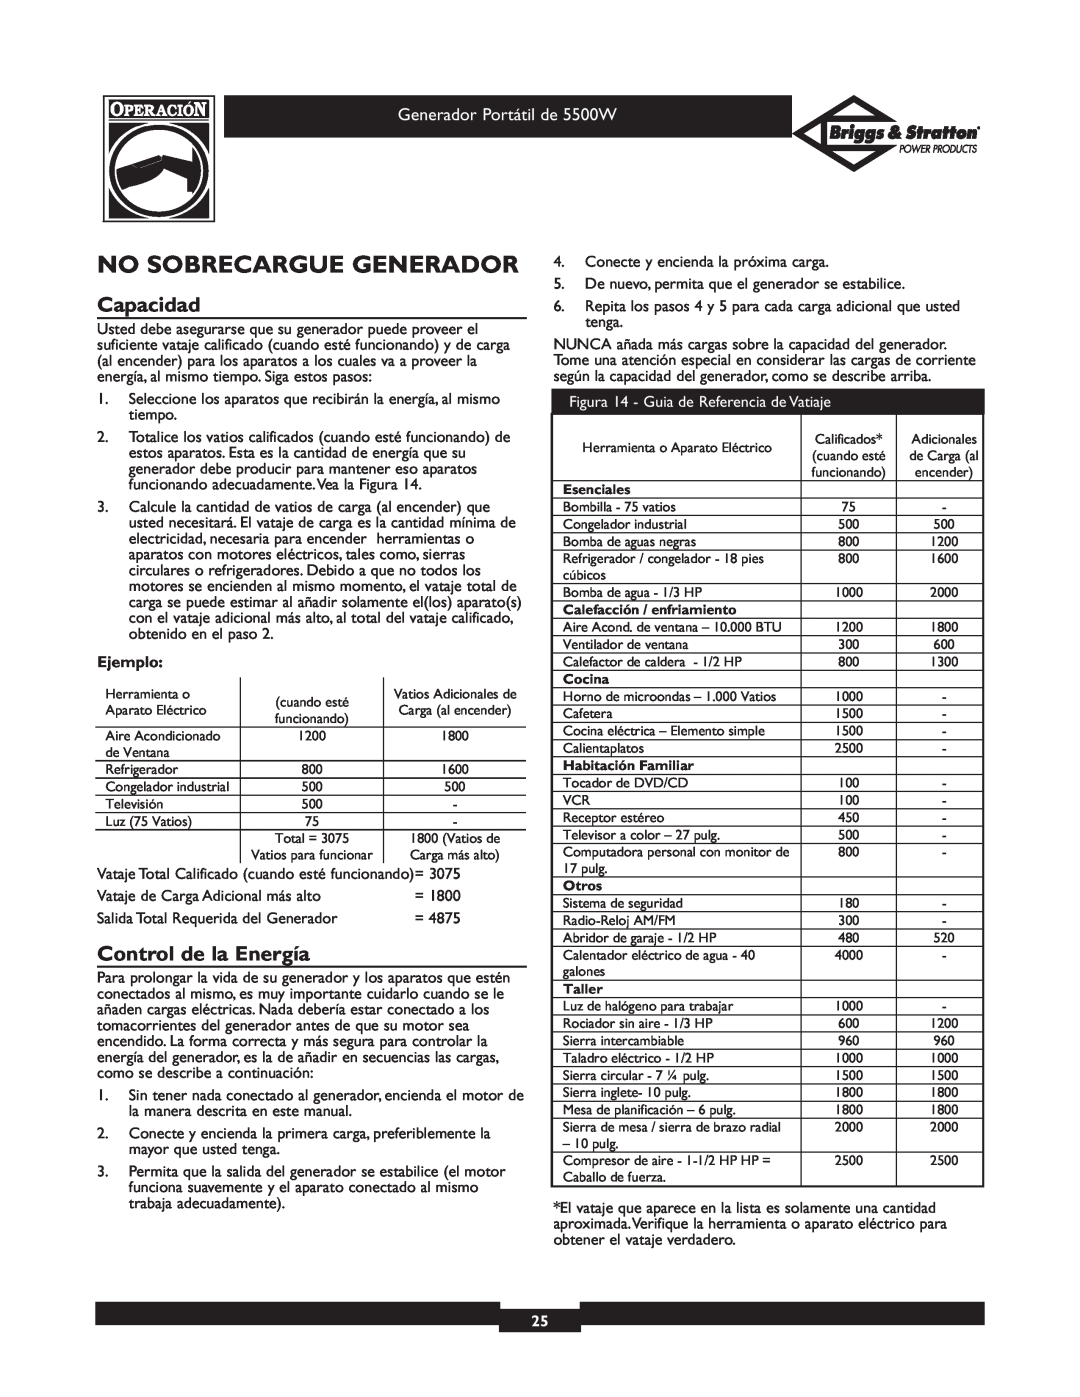 Briggs & Stratton 030209-1 operating instructions No Sobrecargue Generador, Capacidad, Control de la Energía, Ejemplo 